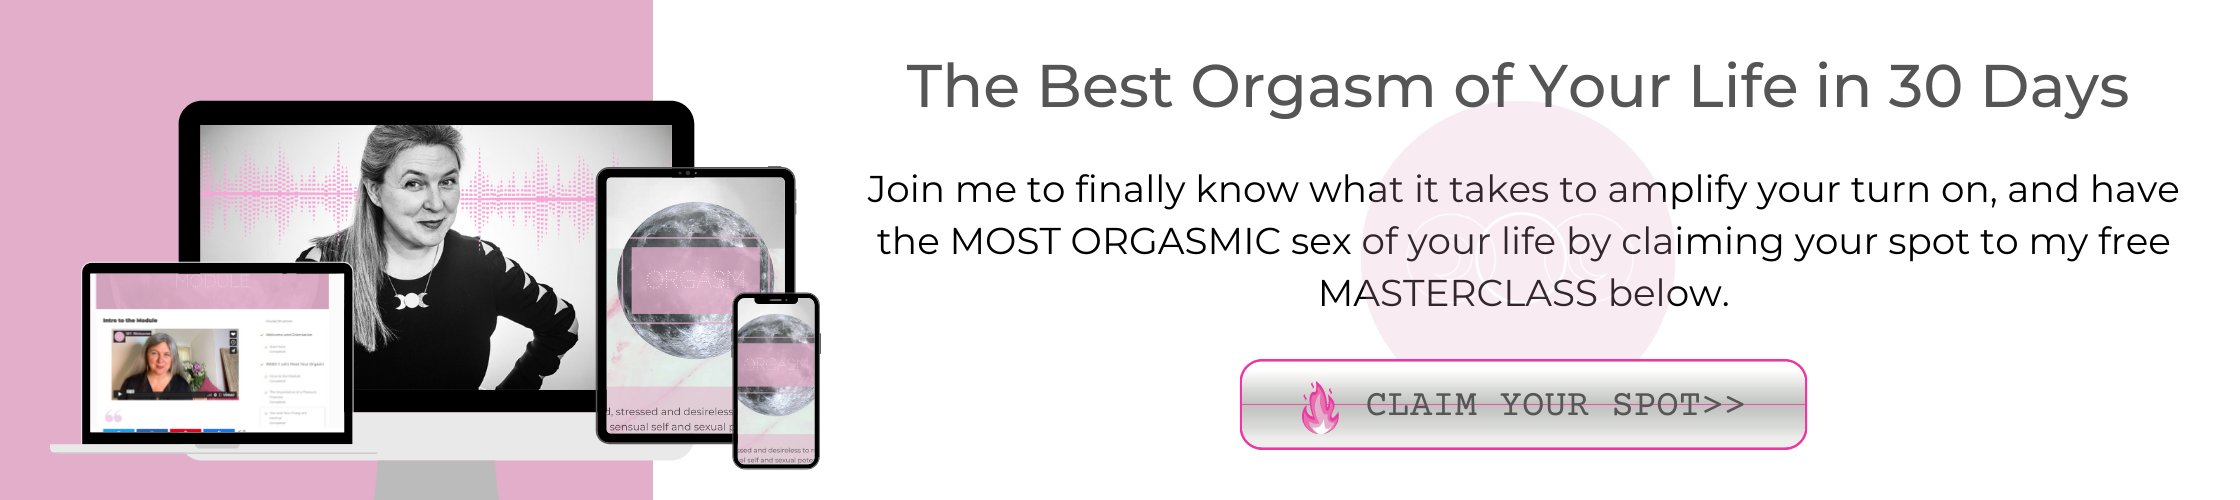 best orgasm masterclass